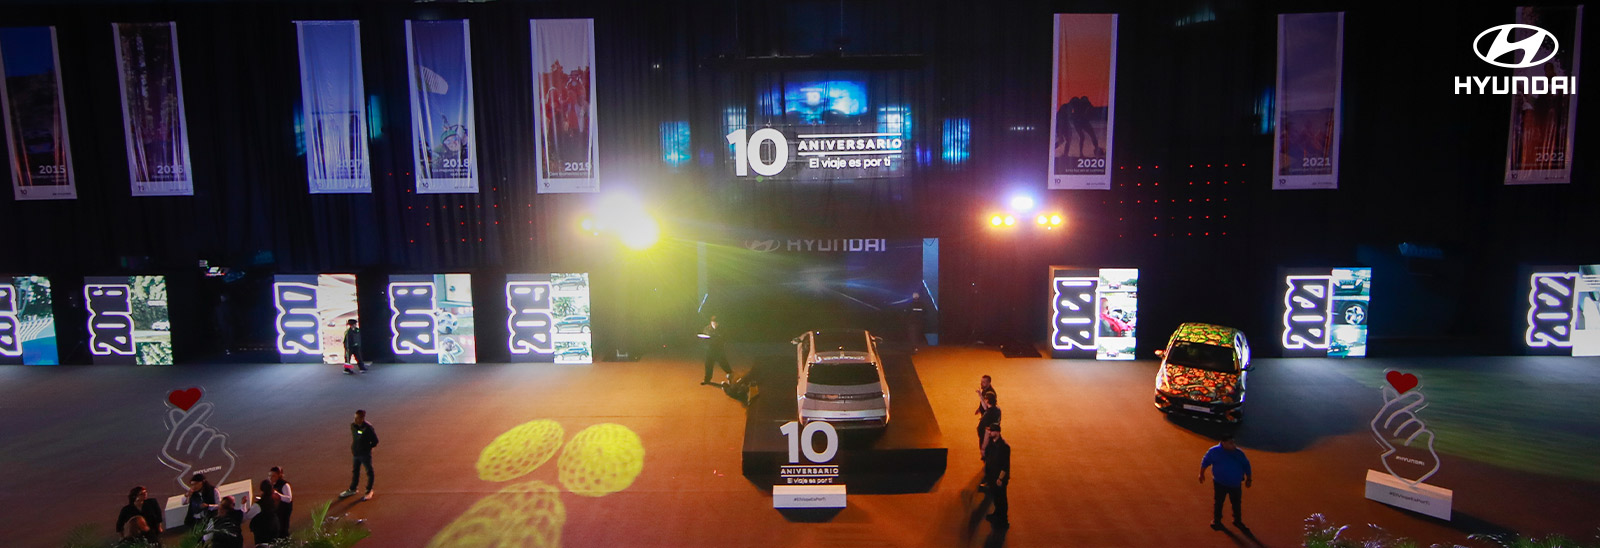 Hyundai festeja 10 años en México con evento de lanzamiento